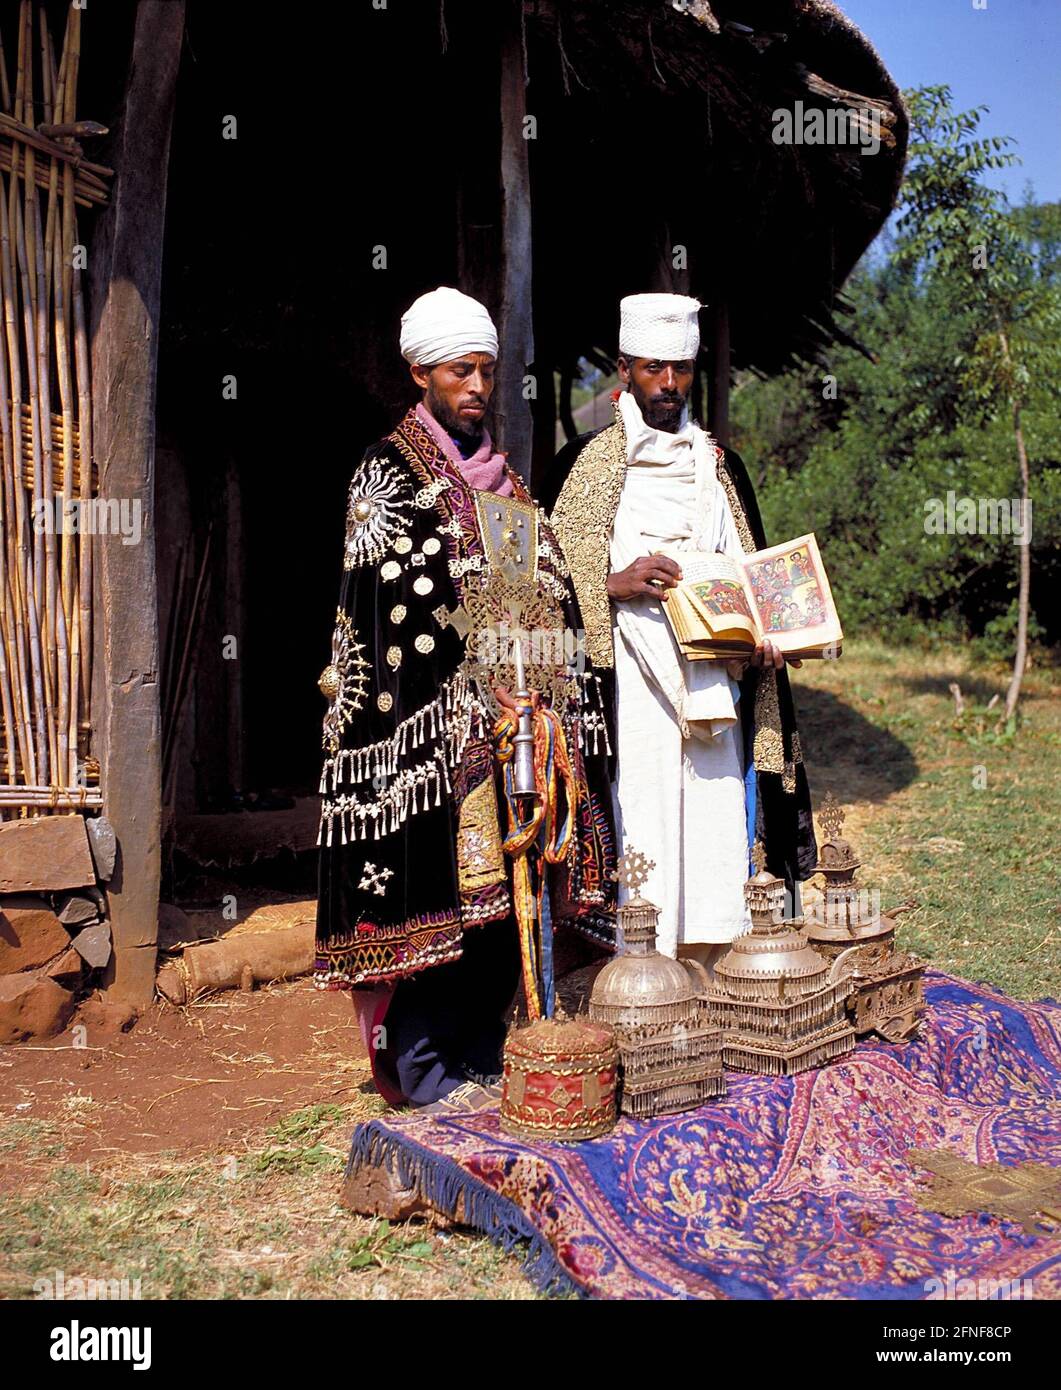 Due sacerdoti etiopi del monastero di Bahar Dhar sulla penisola di Zeghi, nel lago di Tana, con le antiche corone imperiali che conservano fino ad oggi. [traduzione automatizzata] Foto Stock